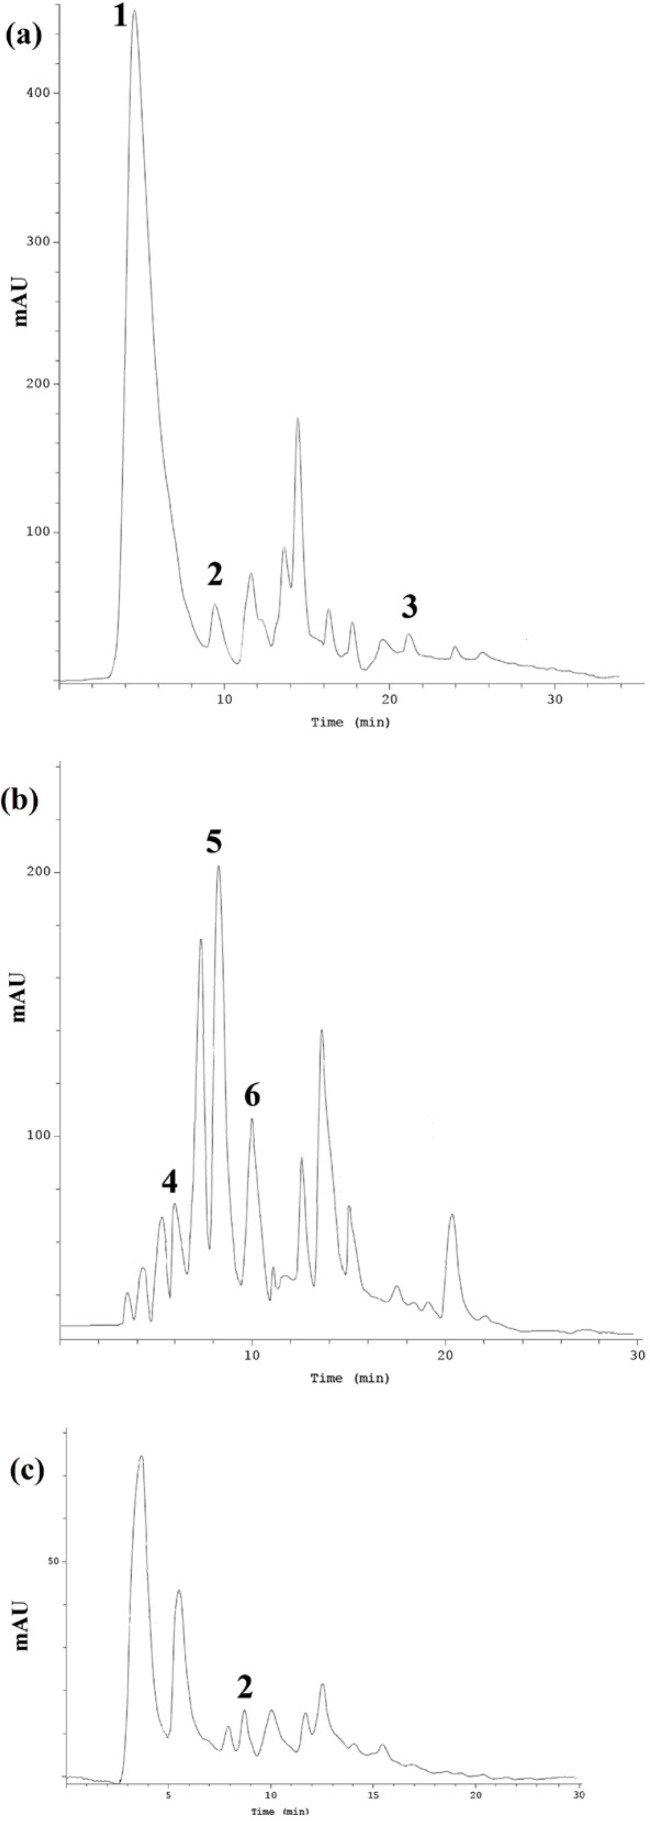 HPLC chromatogram of phenolic compounds 1: Gallic acid, 2: Syringic acid, 3: Quercetin, 4: Caffeic acid, 5: p-Cumaric acid, 6: Ferulic acid detected in RDHE (a), GGHE (b) and NJHE (c) hydroalcoholic extracts